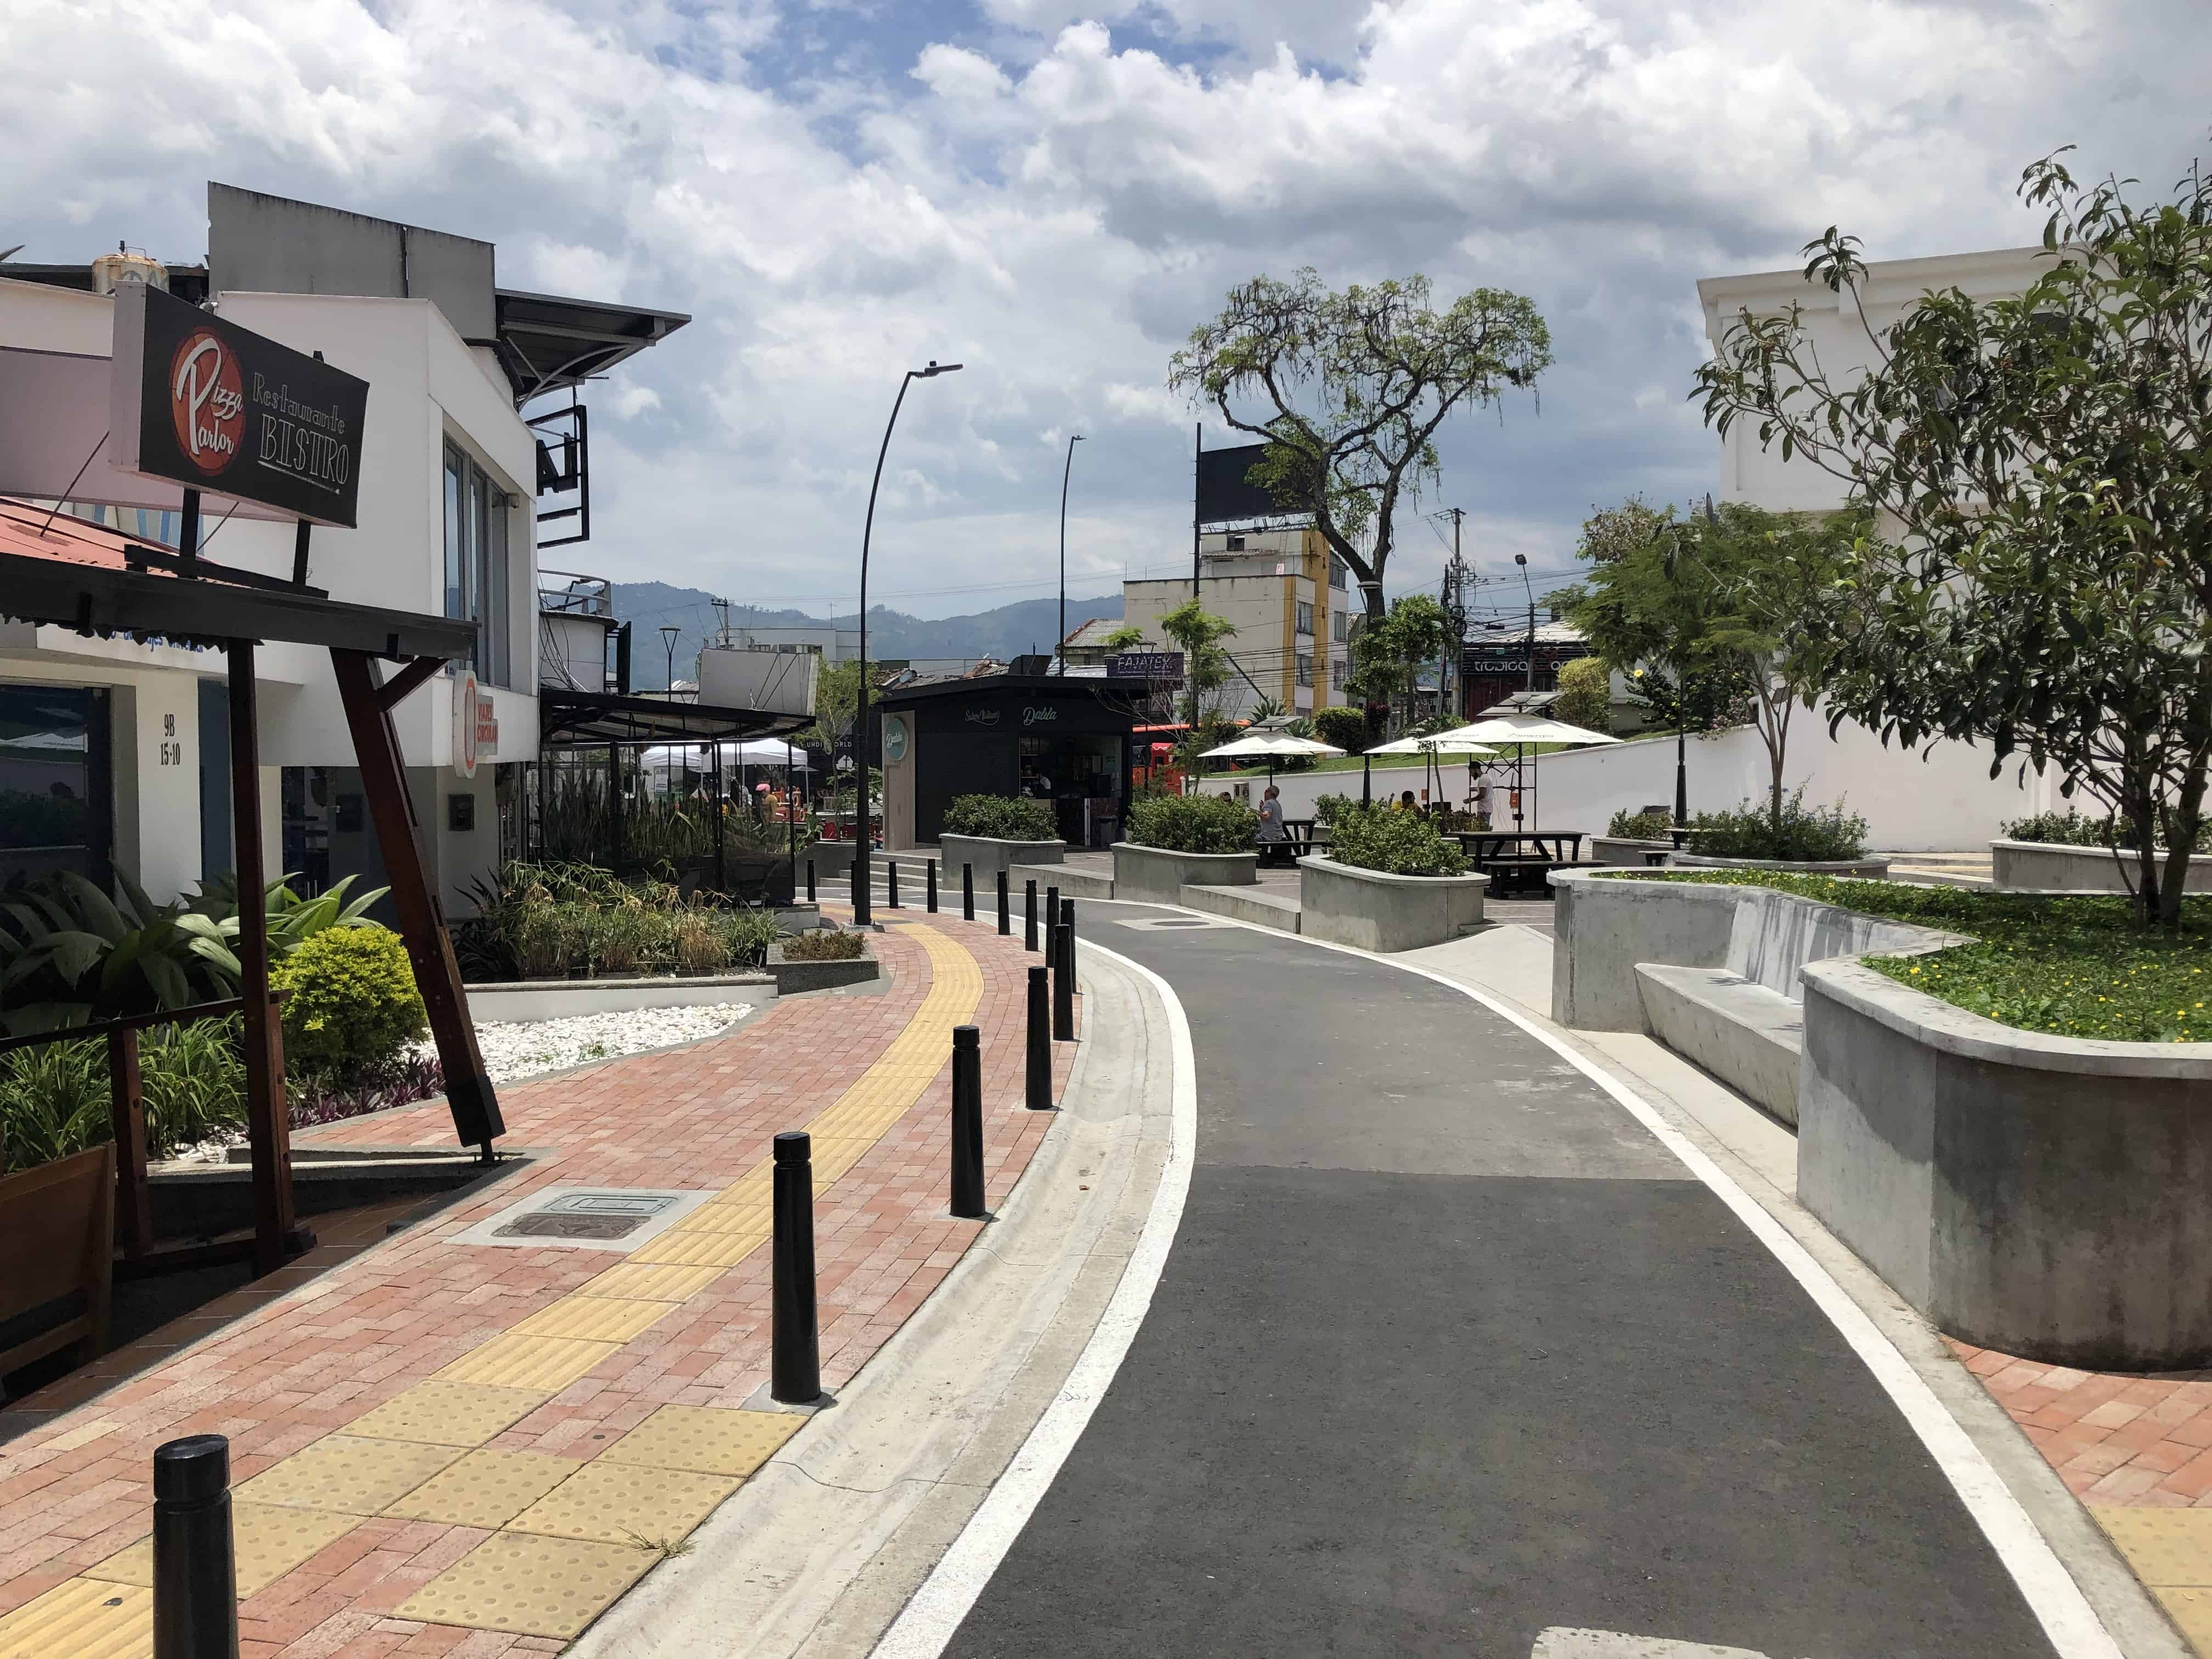 Bike and pedestrian lane in Parque La Julia